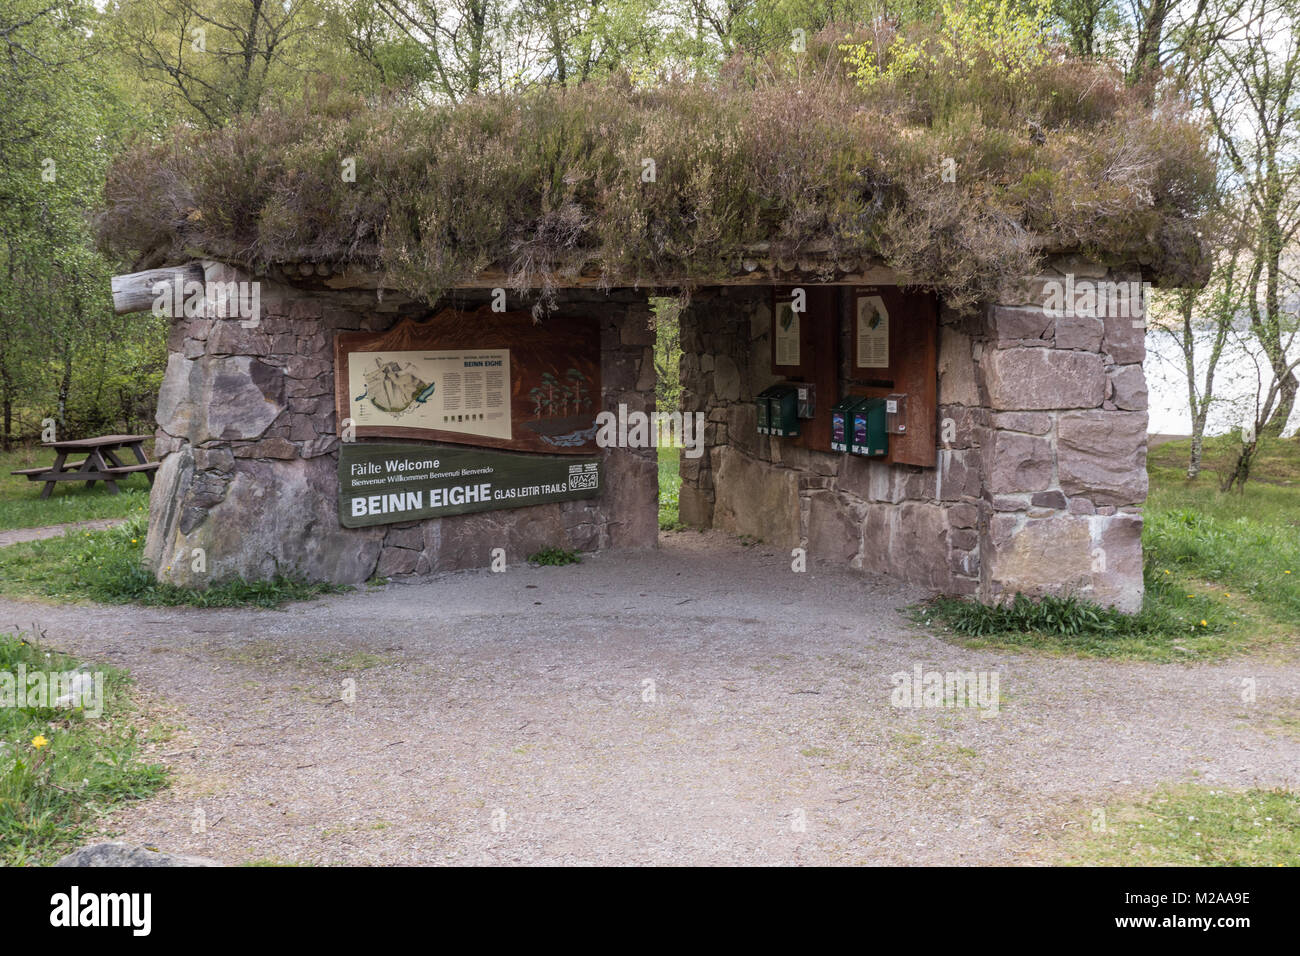 La structure de l'information aux visiteurs au Loch Maree et Bienn Eighe, Wester Ross, Scotland. UK. Banque D'Images